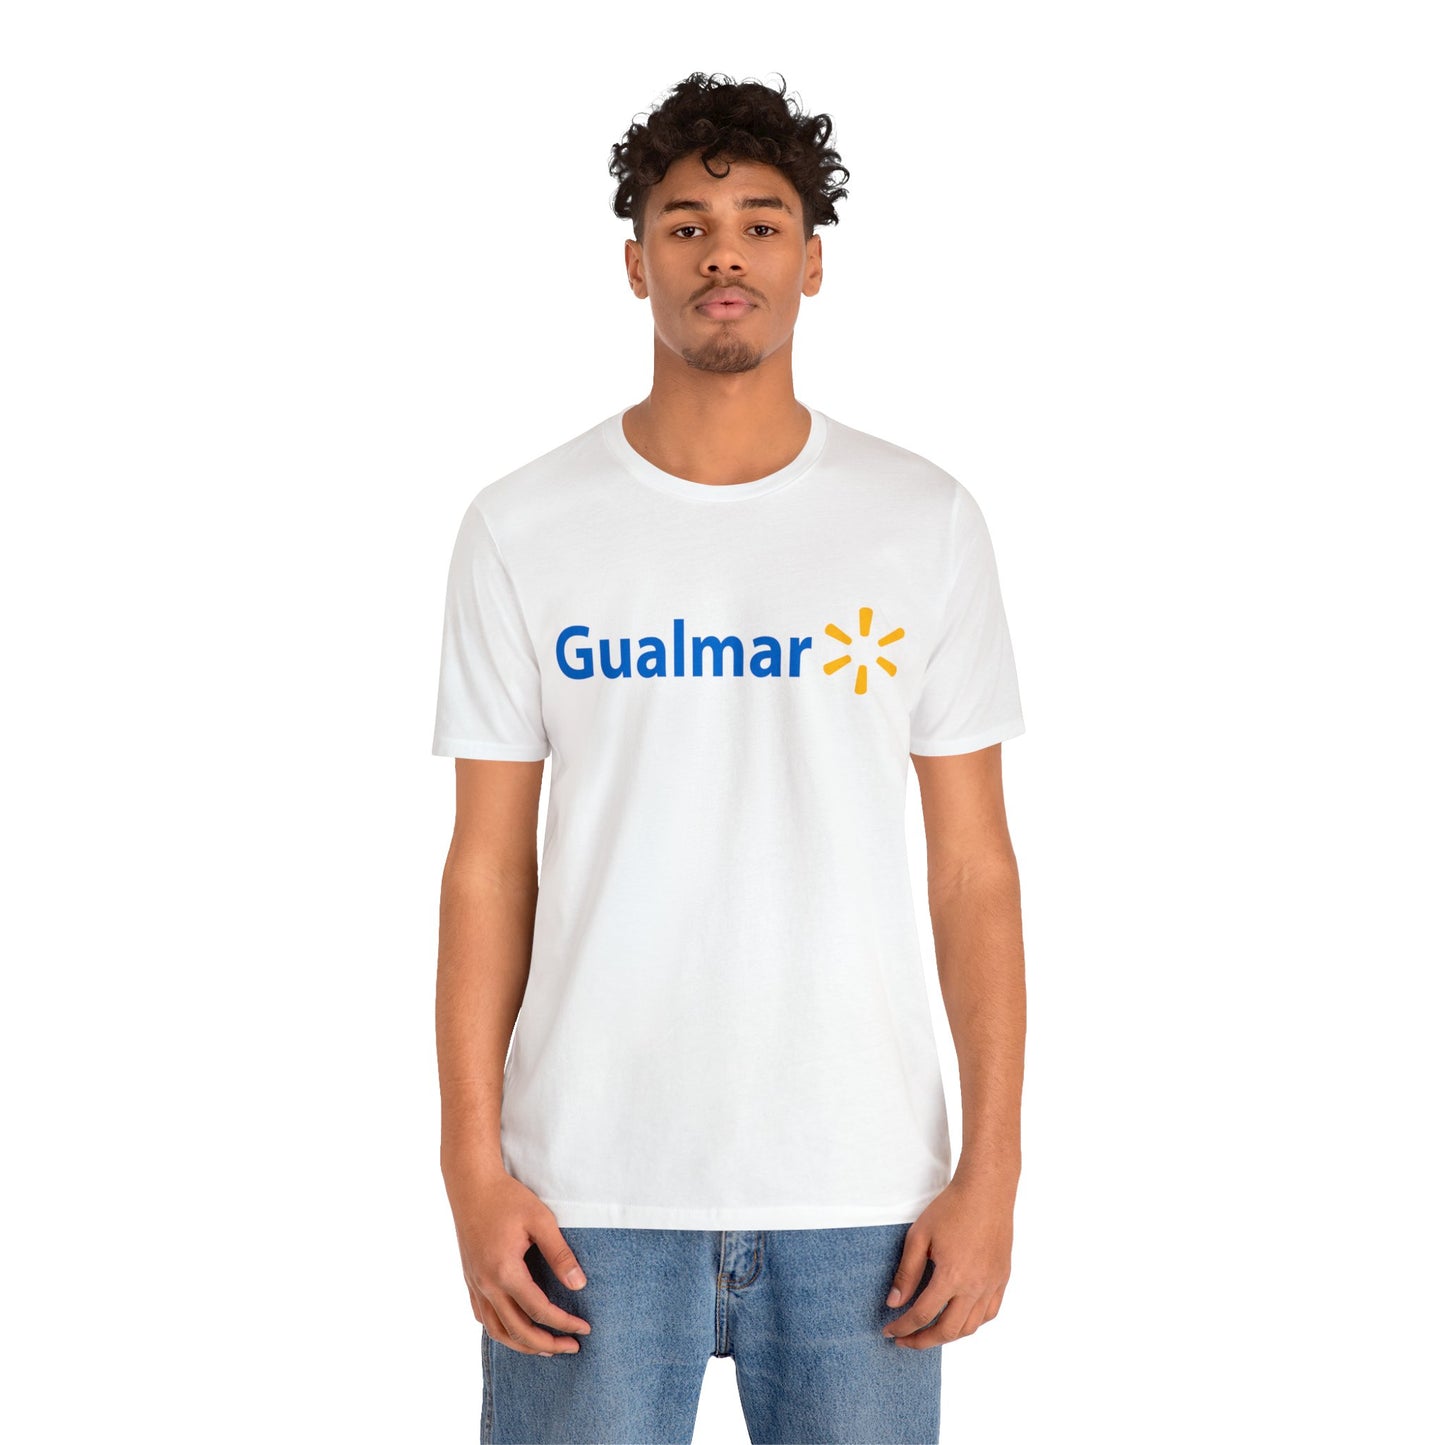 Gualmar T-Shirt - Hispanic Inspired Walmart Parody